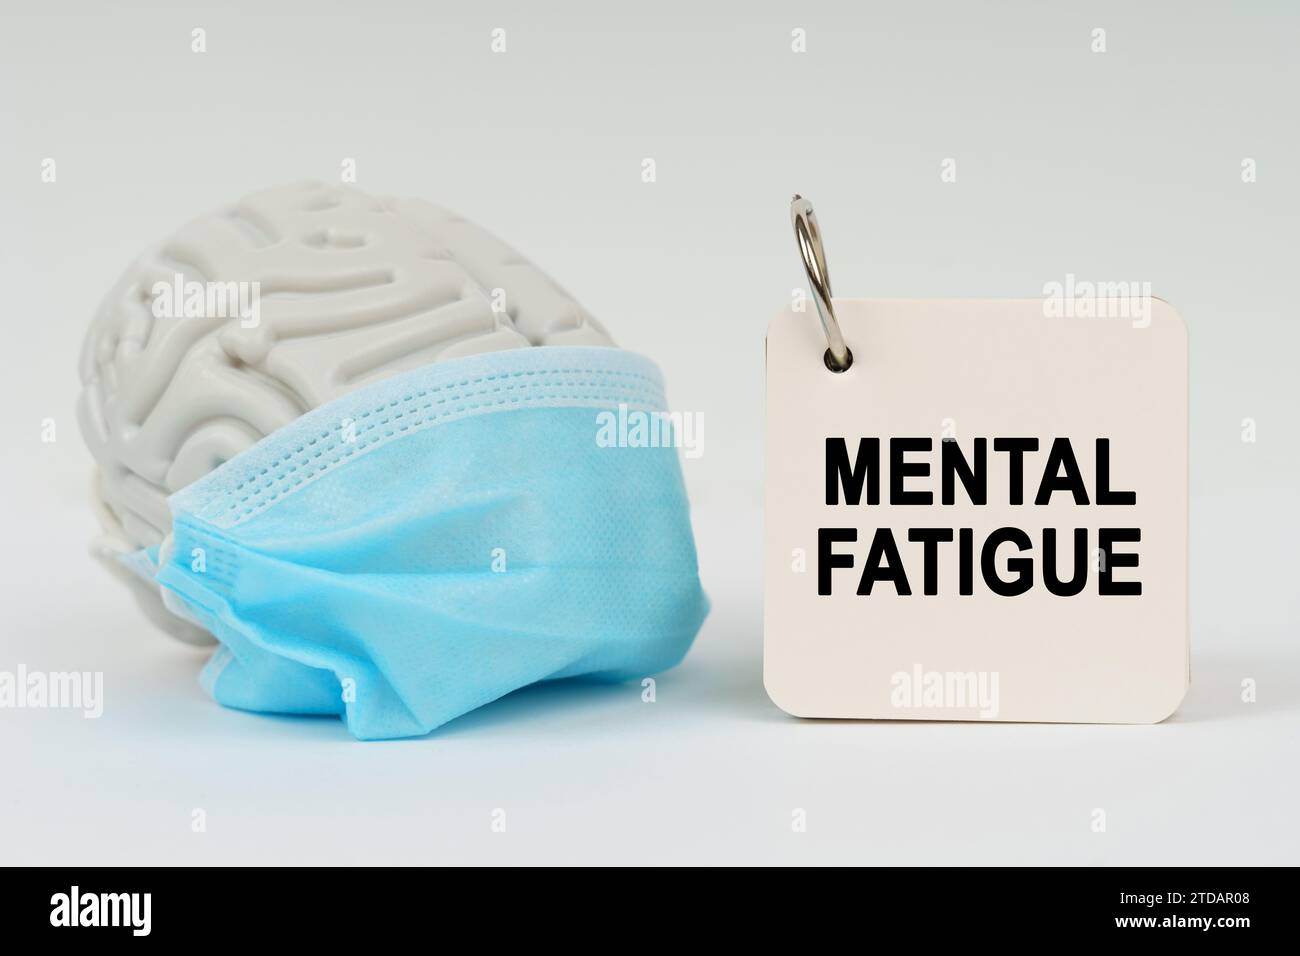 Medizinisches Konzept. Auf einer weißen Oberfläche befindet sich ein Gehirn mit einer blauen Maske und ein Notizblock mit der Inschrift "geistige Ermüdung" Stockfoto